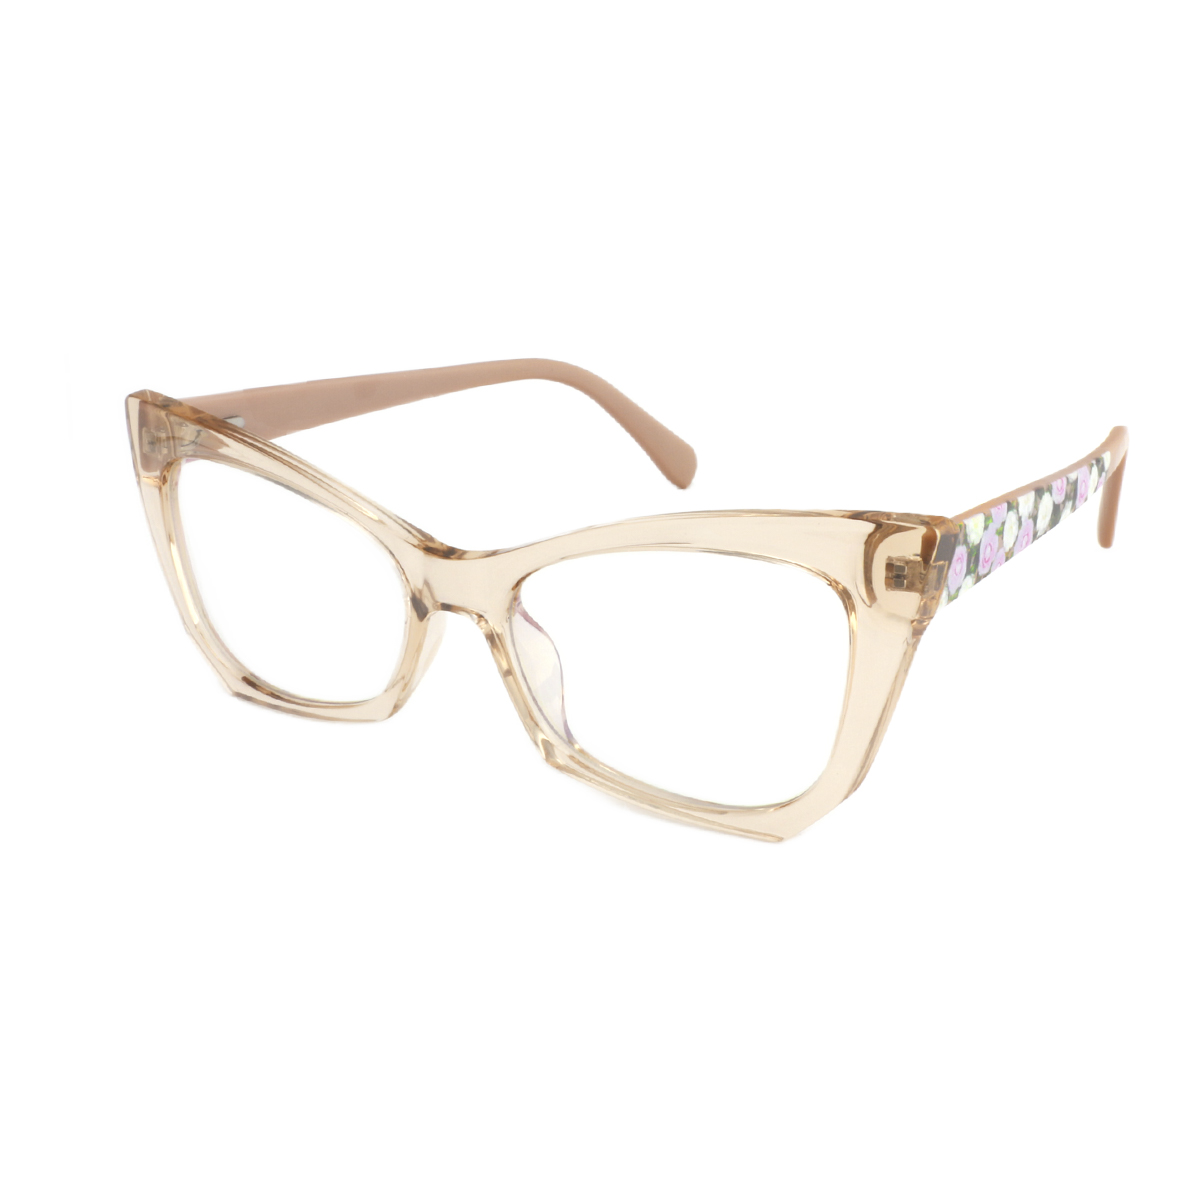 Arce - Cat-eye Tawny Reading Glasses for Women